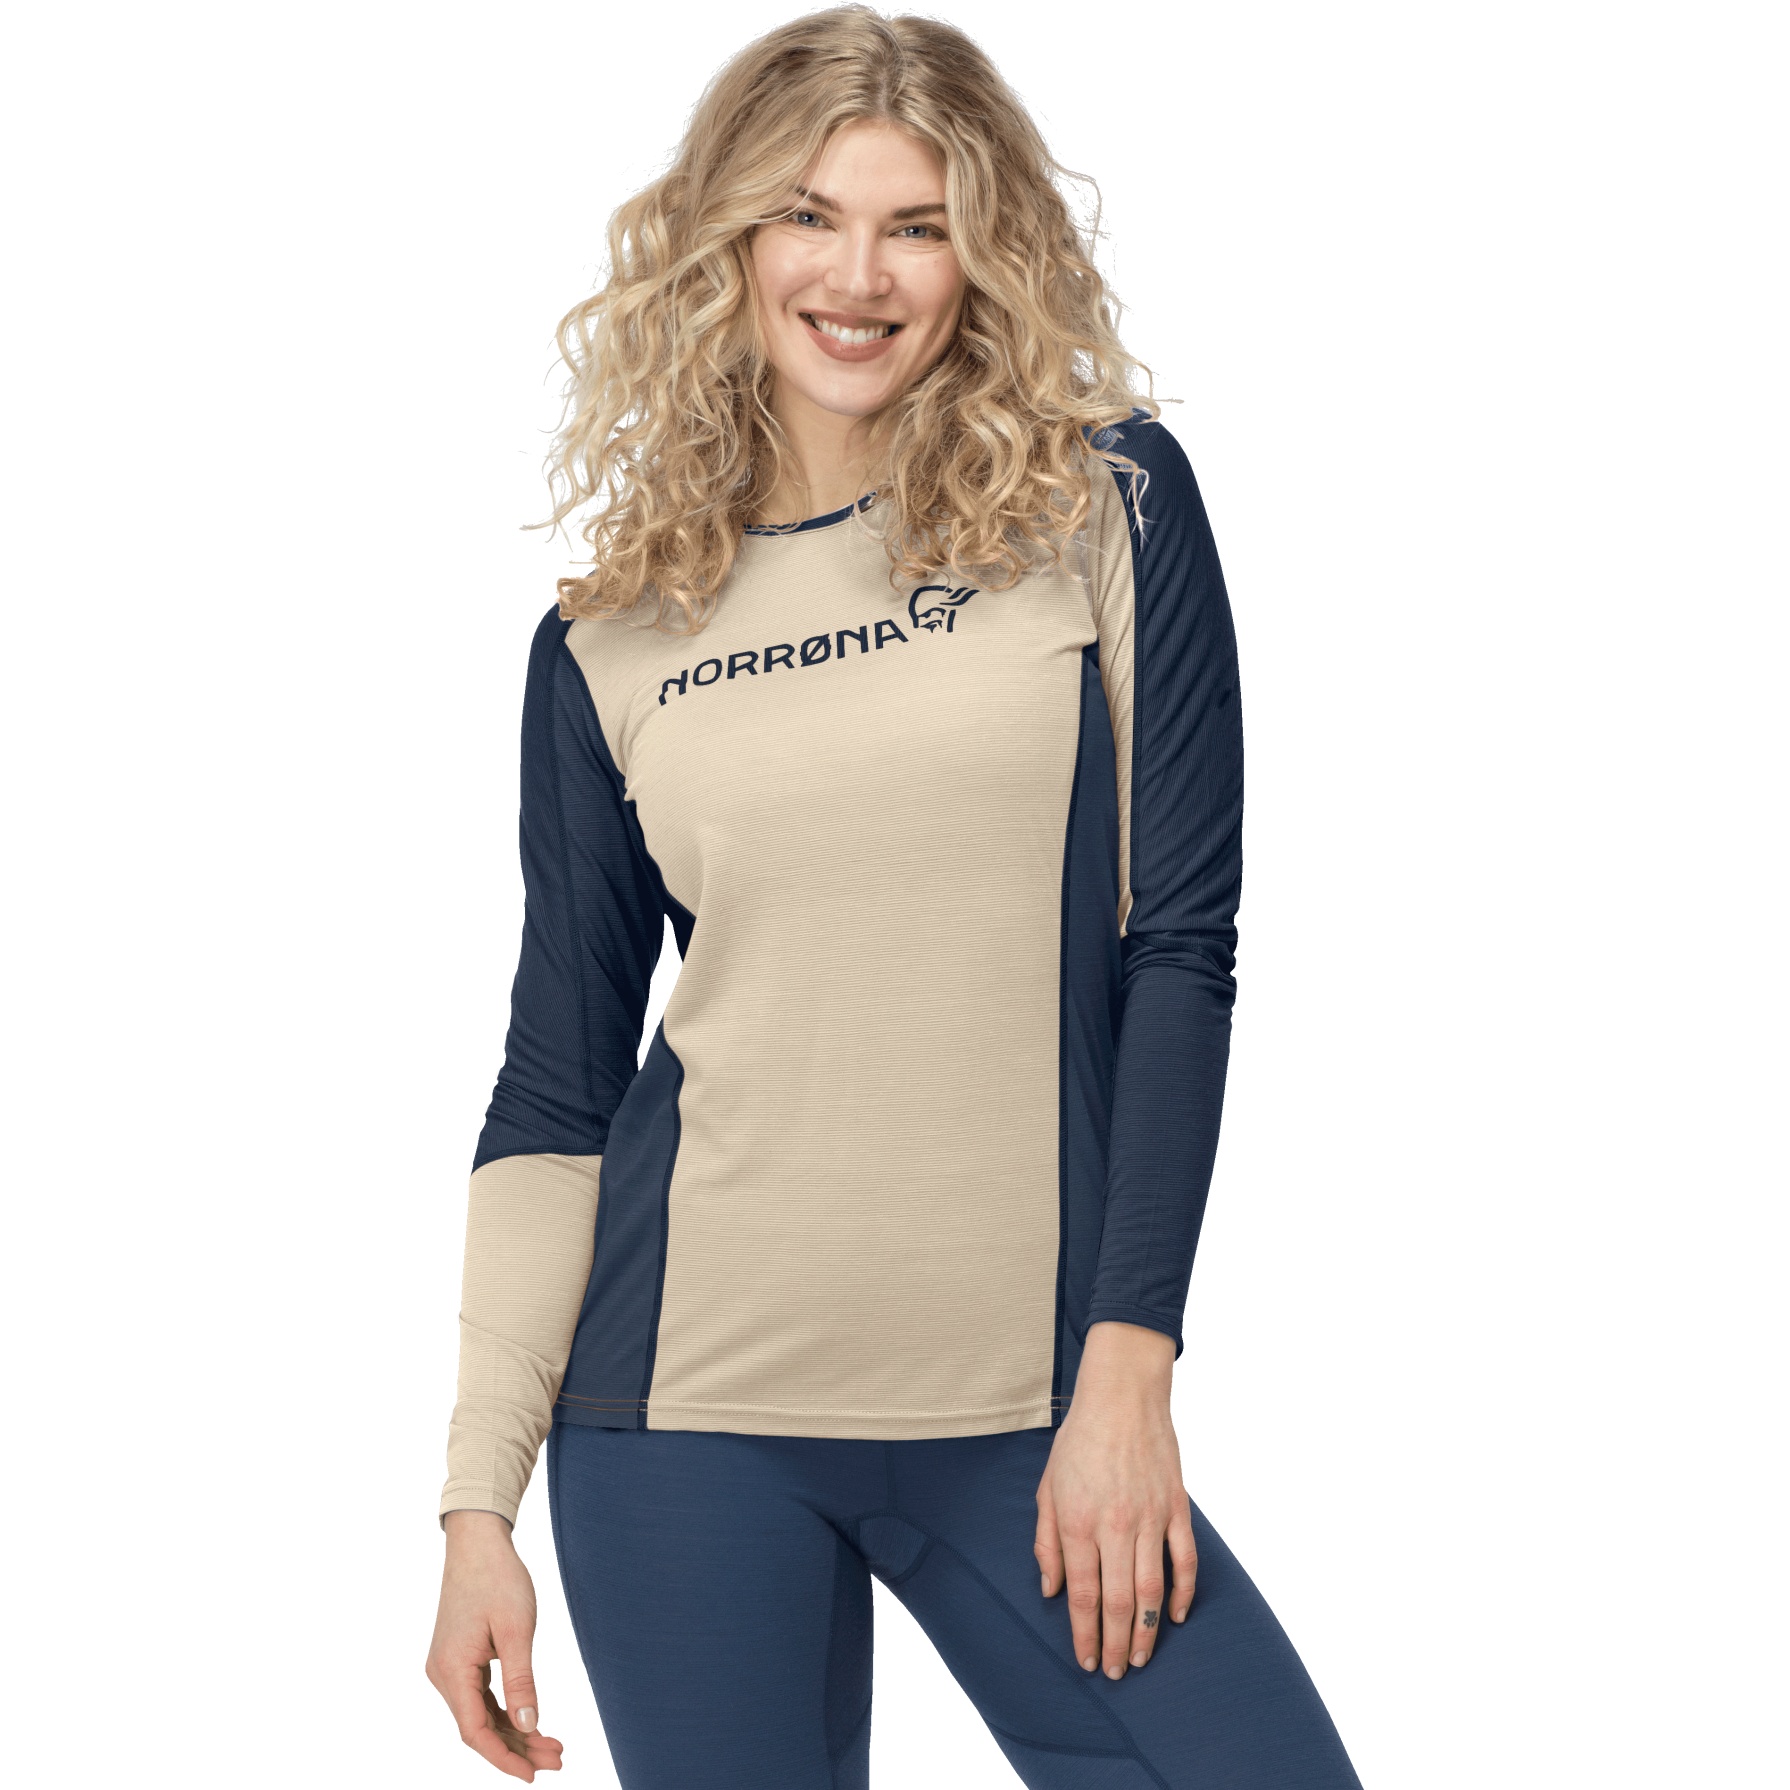 Produktbild von Norrona falketind equaliser merino round Neck Langarmshirt Damen - Pure Cashmere